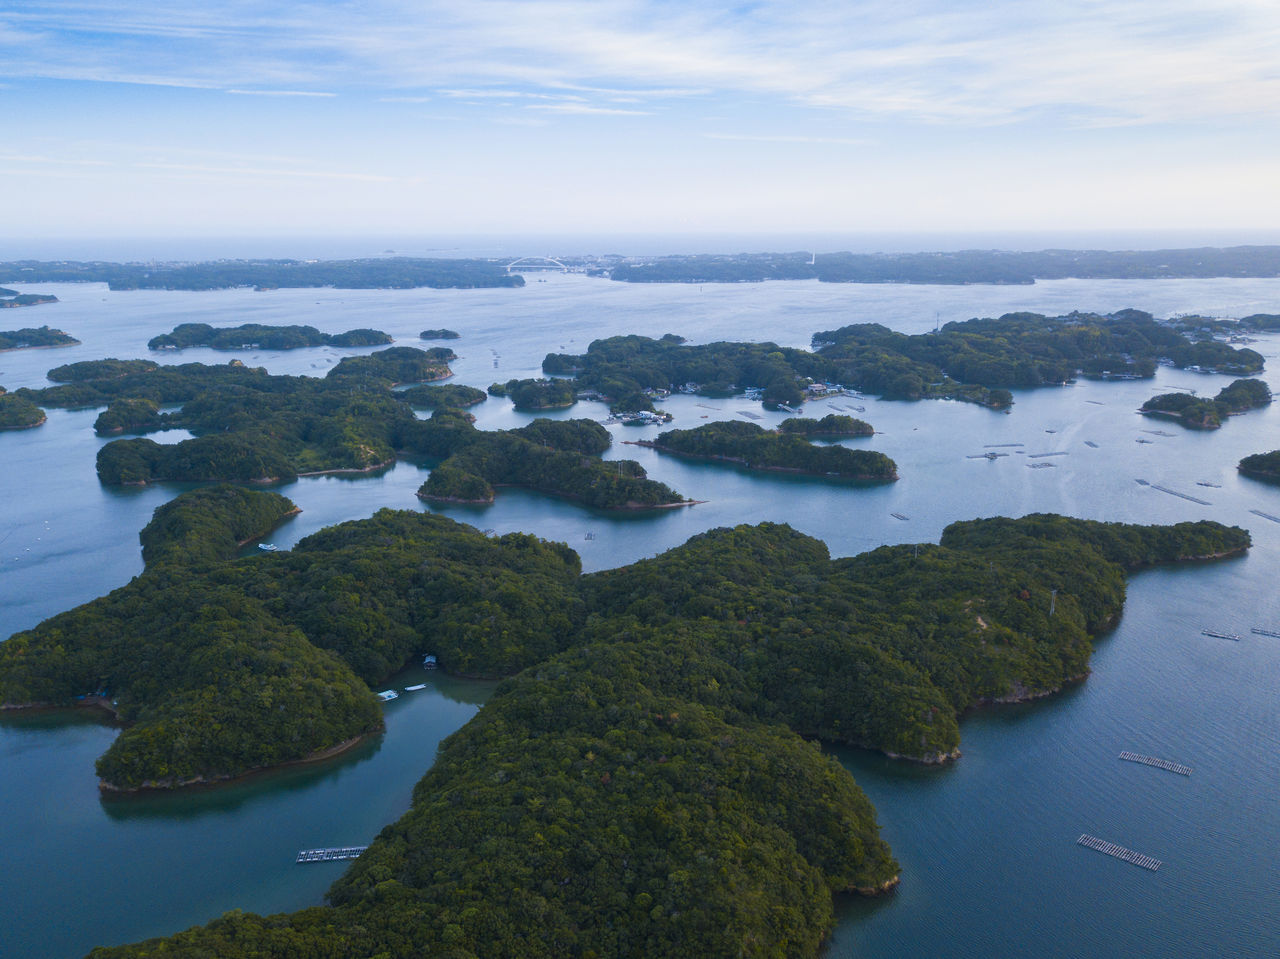 Casi todas las islas están deshabitadas, por lo que la naturaleza permanece intacta.